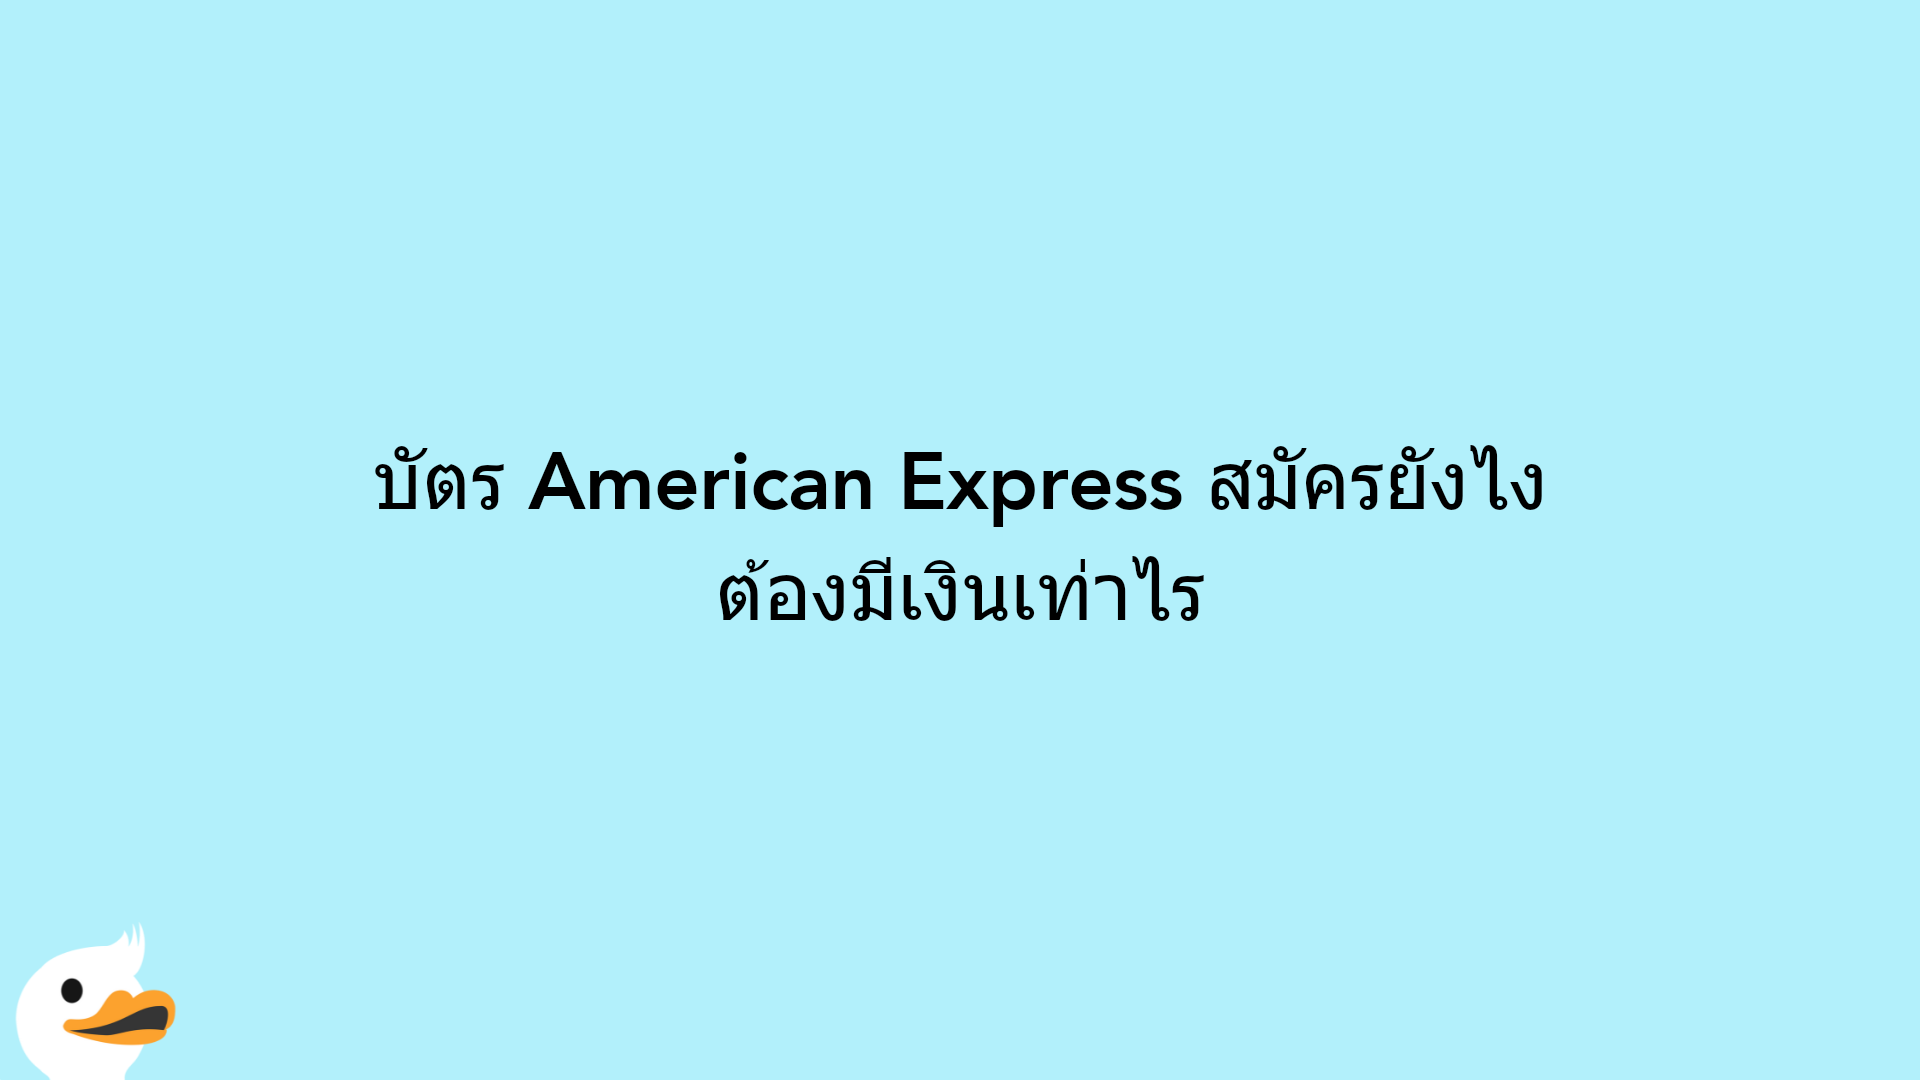 บัตร American Express สมัครยังไง ต้องมีเงินเท่าไร